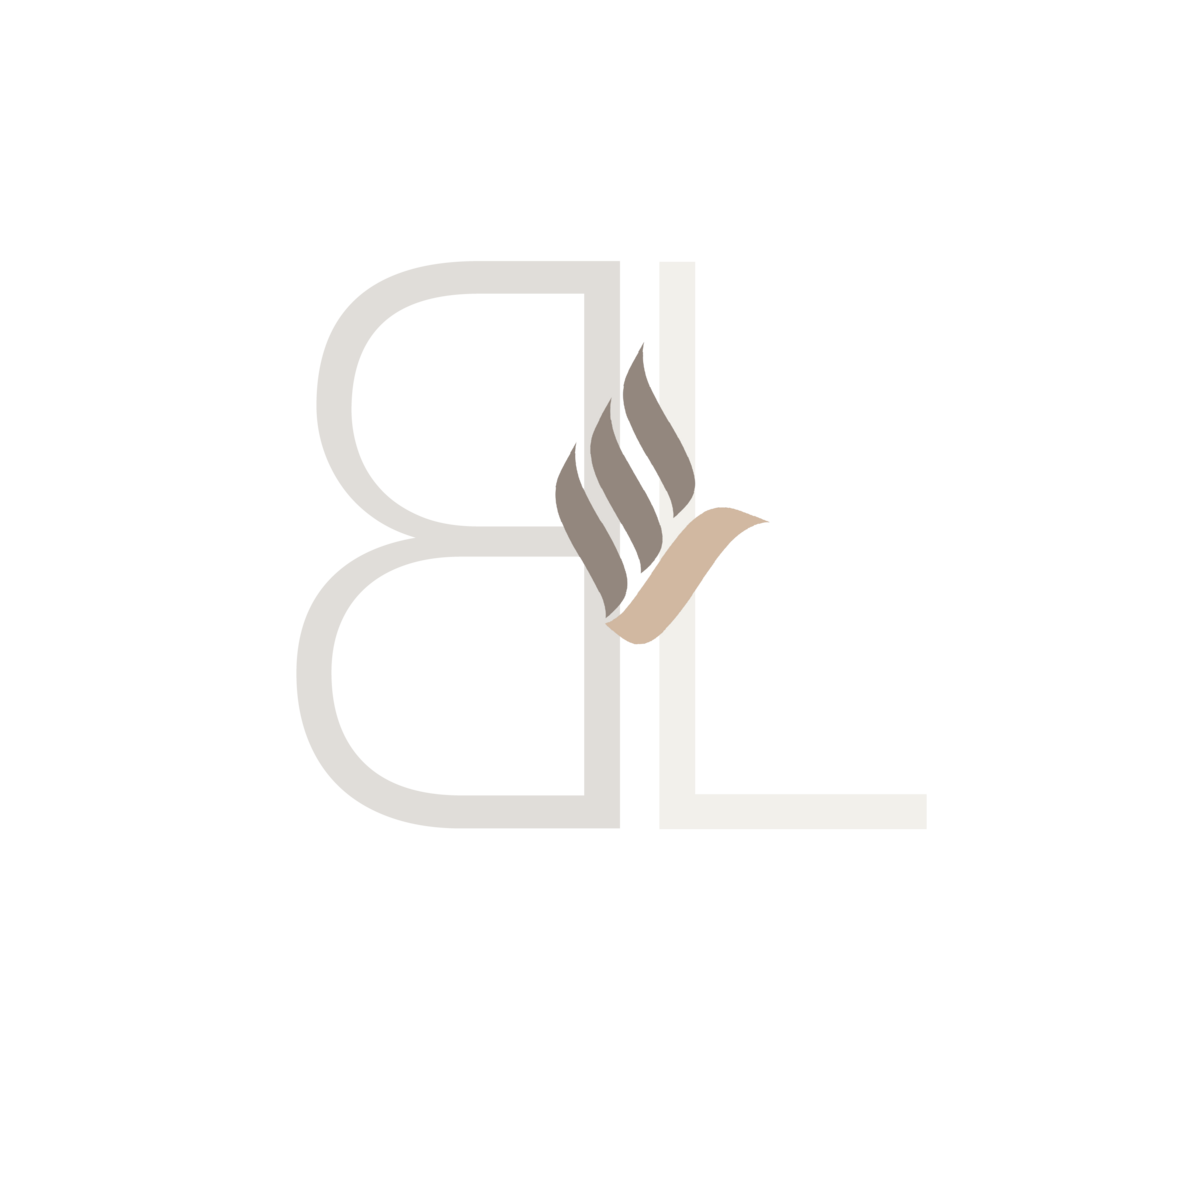 BL logo-01